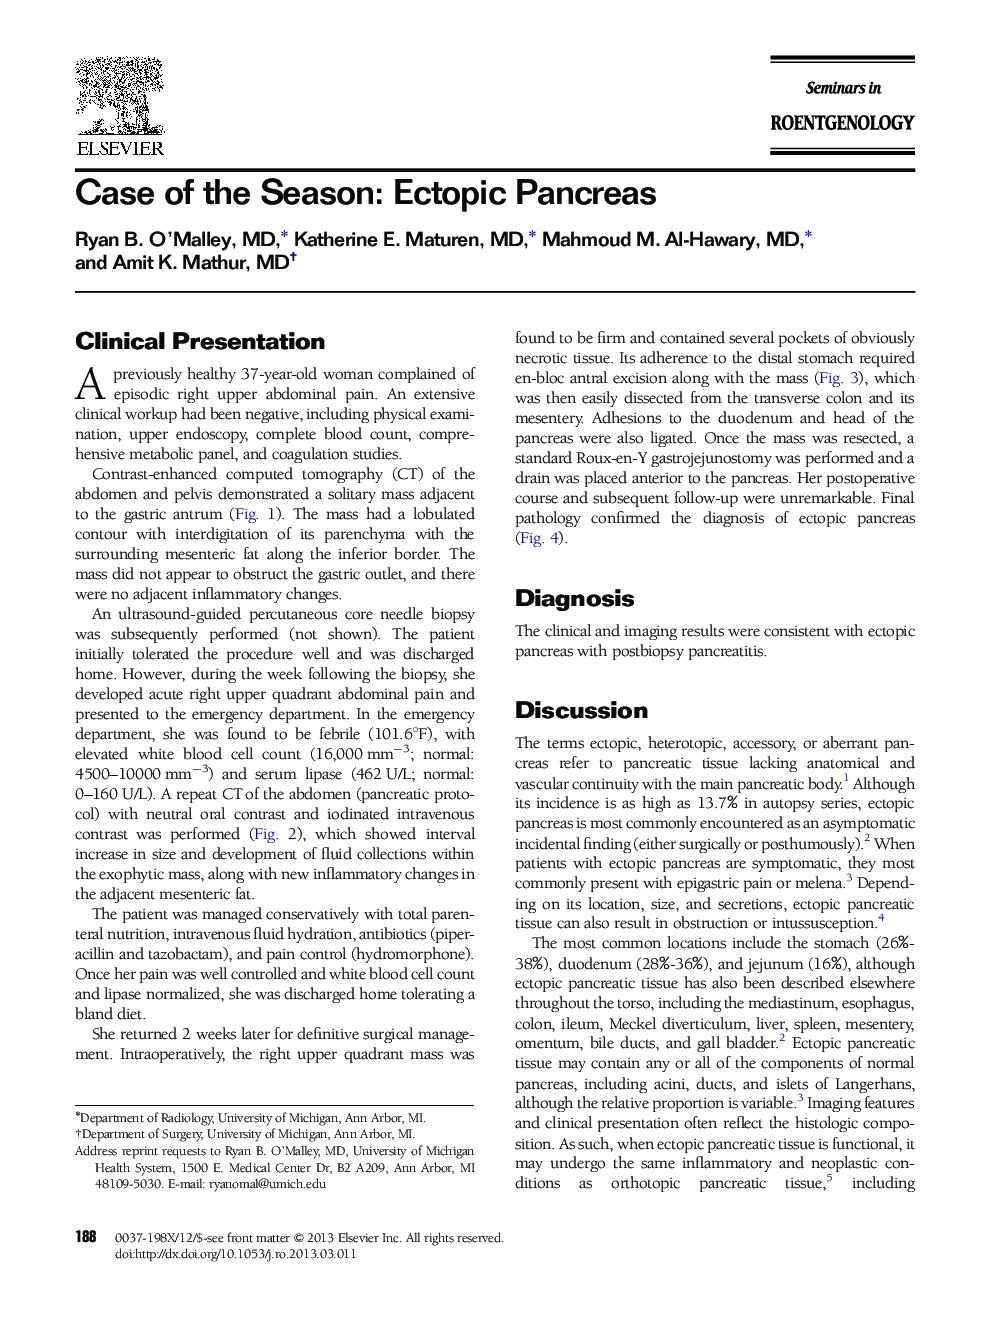 Case of the Season: Ectopic Pancreas